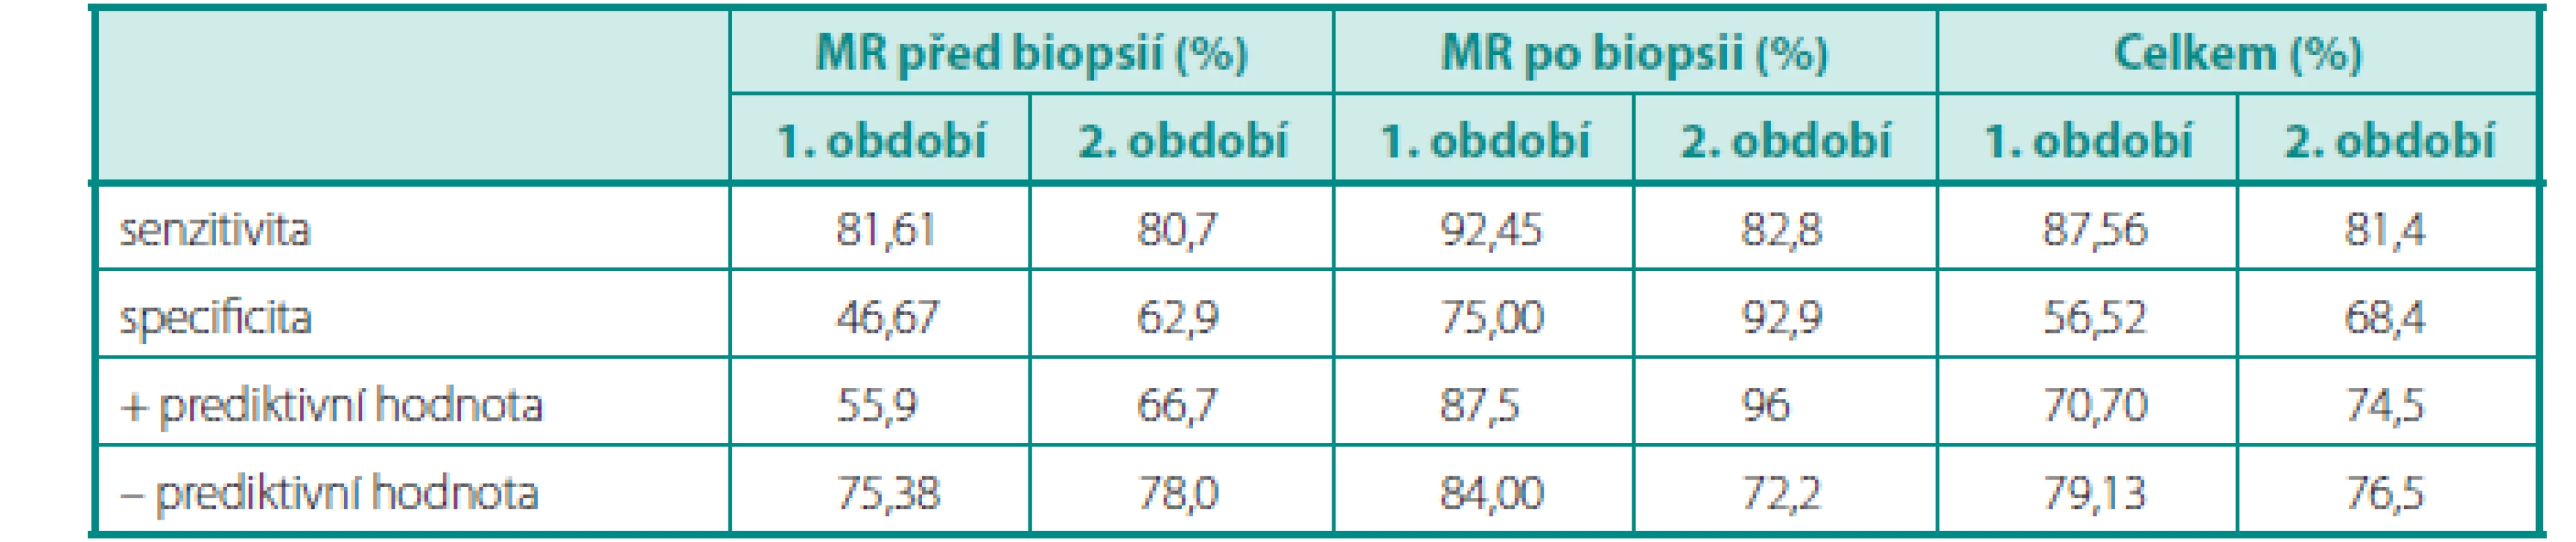 MRI senzitivita, specificita, pozitivní a negativní prediktivní hodnota u pacientů s biopsií prostaty před MR, po MR a u všech pacientů (1. období 4/2011 až 4/2013, 2. období 5/2013 až 12/2013) 
Table 1. MRI sensitivity, specificity, positive predictive value and negative predictive value in patients with prostate biopsy before MR, after MR and in all patients. (1st period 4/2011–4/2013, 2nd period 5/2013–12/2013